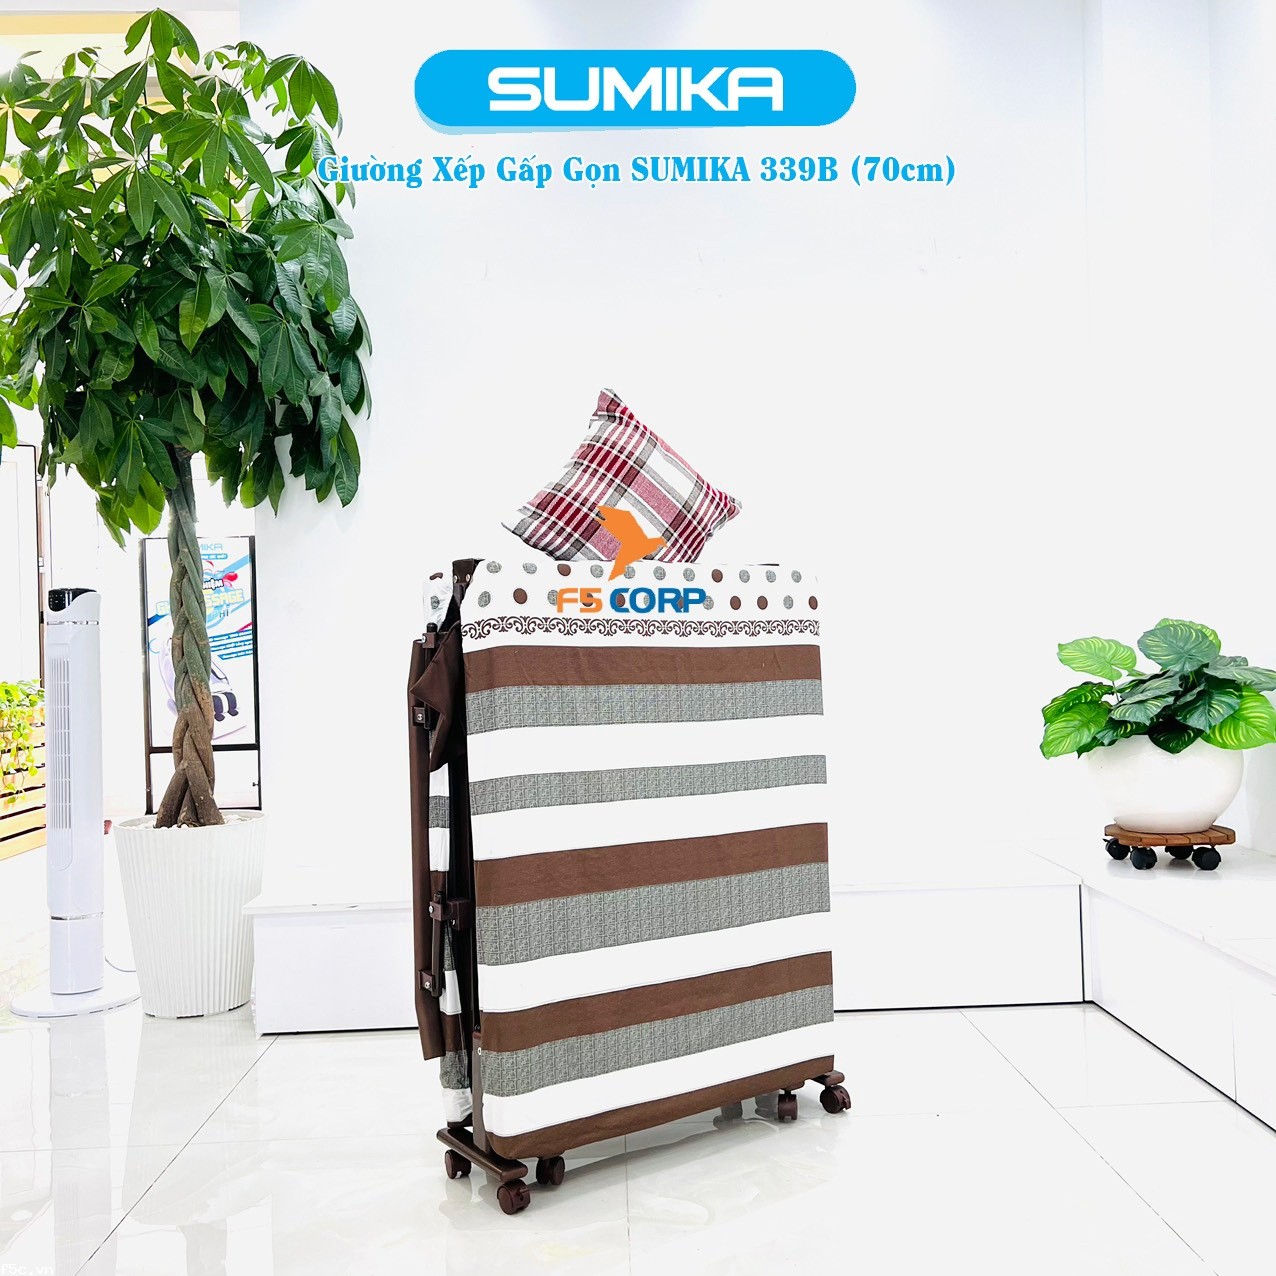 Giường nệm xếp gọn đa năng kiểu dáng Hàn Quốc SUMIKA 339B, rộng 70cm